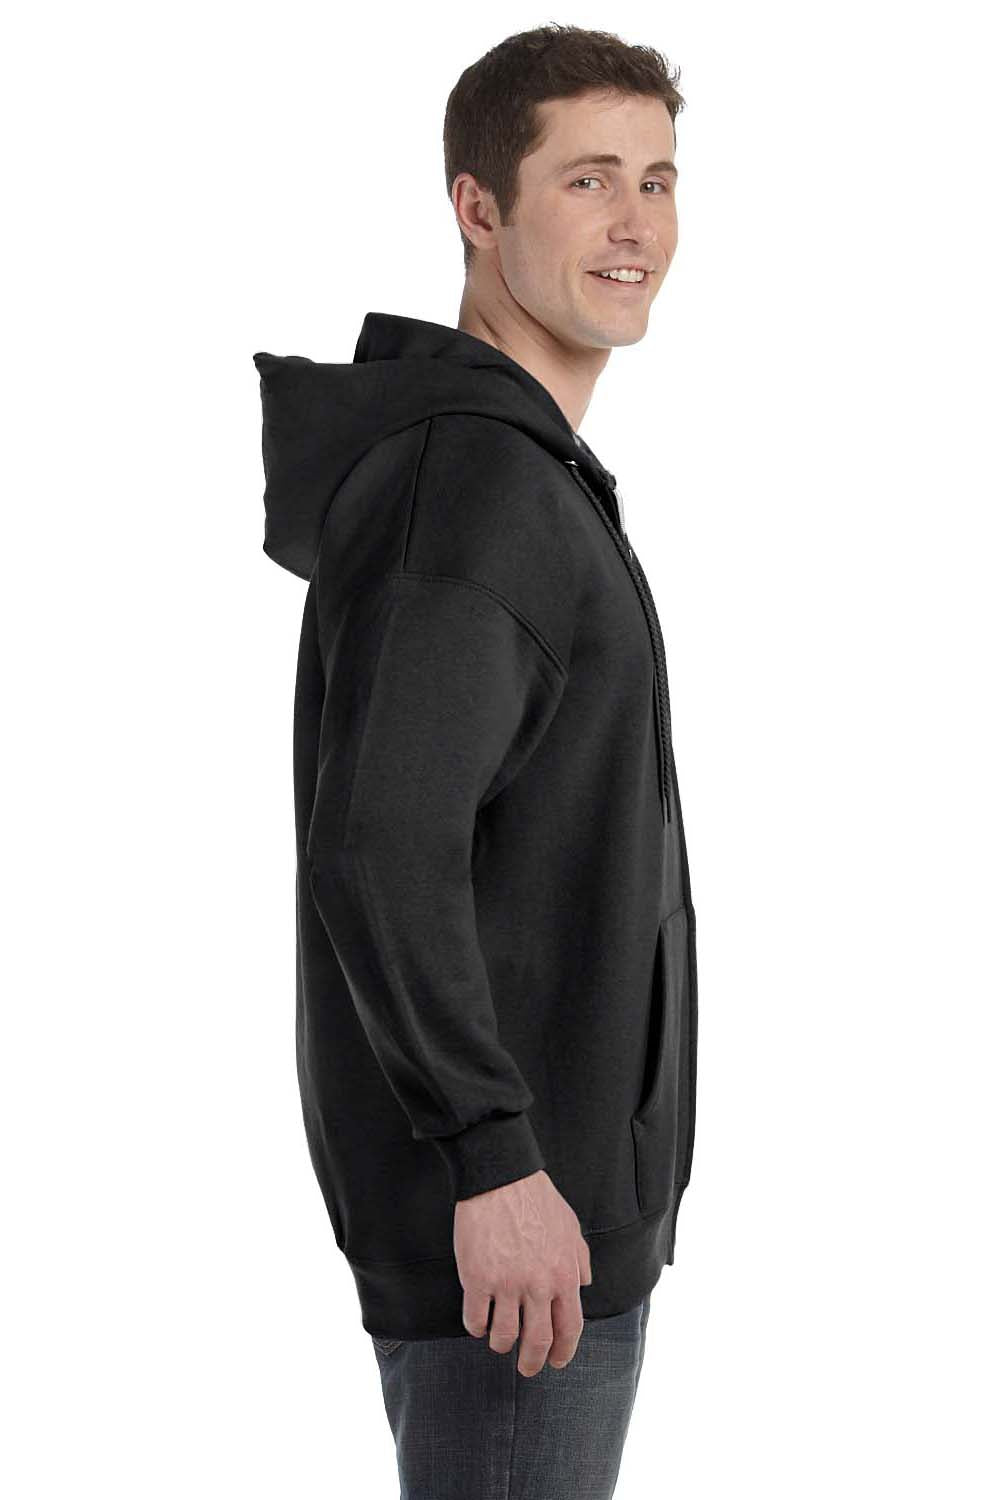 Hanes F280 Mens Ultimate Cotton PrintPro XP Full Zip Hooded Sweatshirt Hoodie Black Side